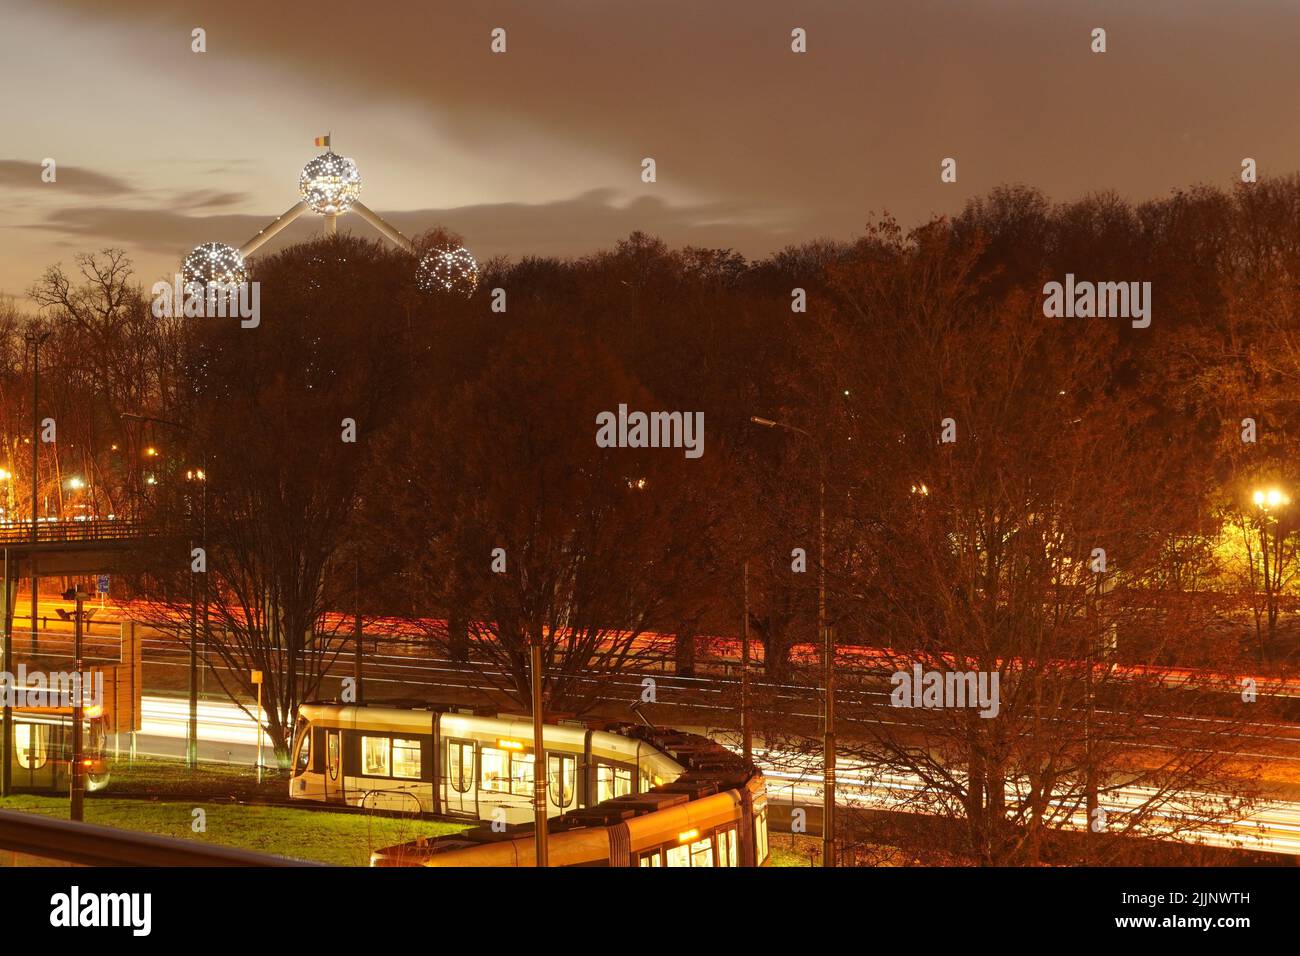 Le célèbre Atomium de Bruxelles contre un ciel nuageux dans la soirée Banque D'Images